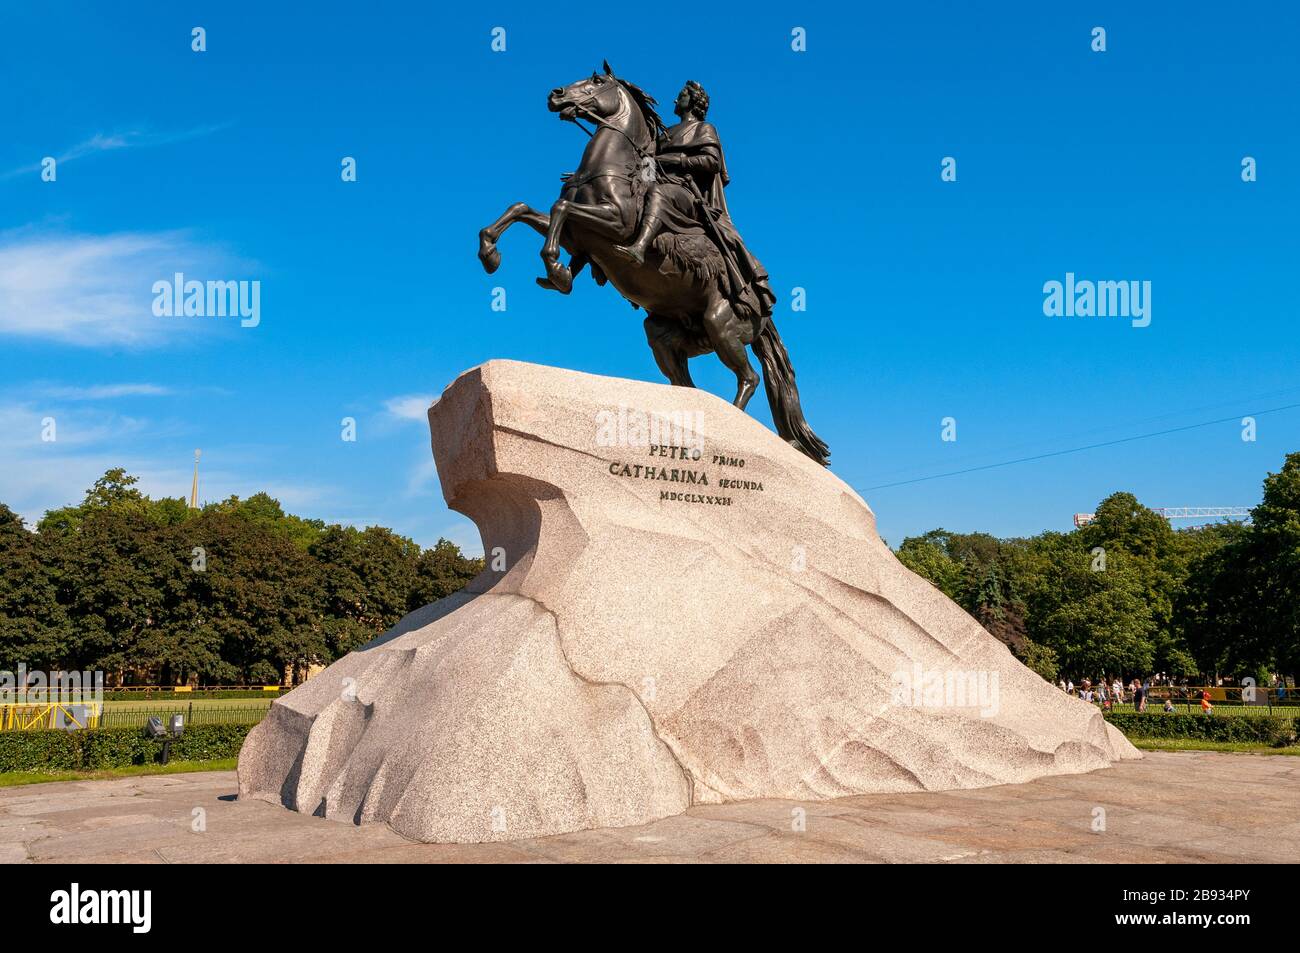 Le cavalier de bronze statue de Pierre le Grand, Saint-Pétersbourg, Russie Banque D'Images